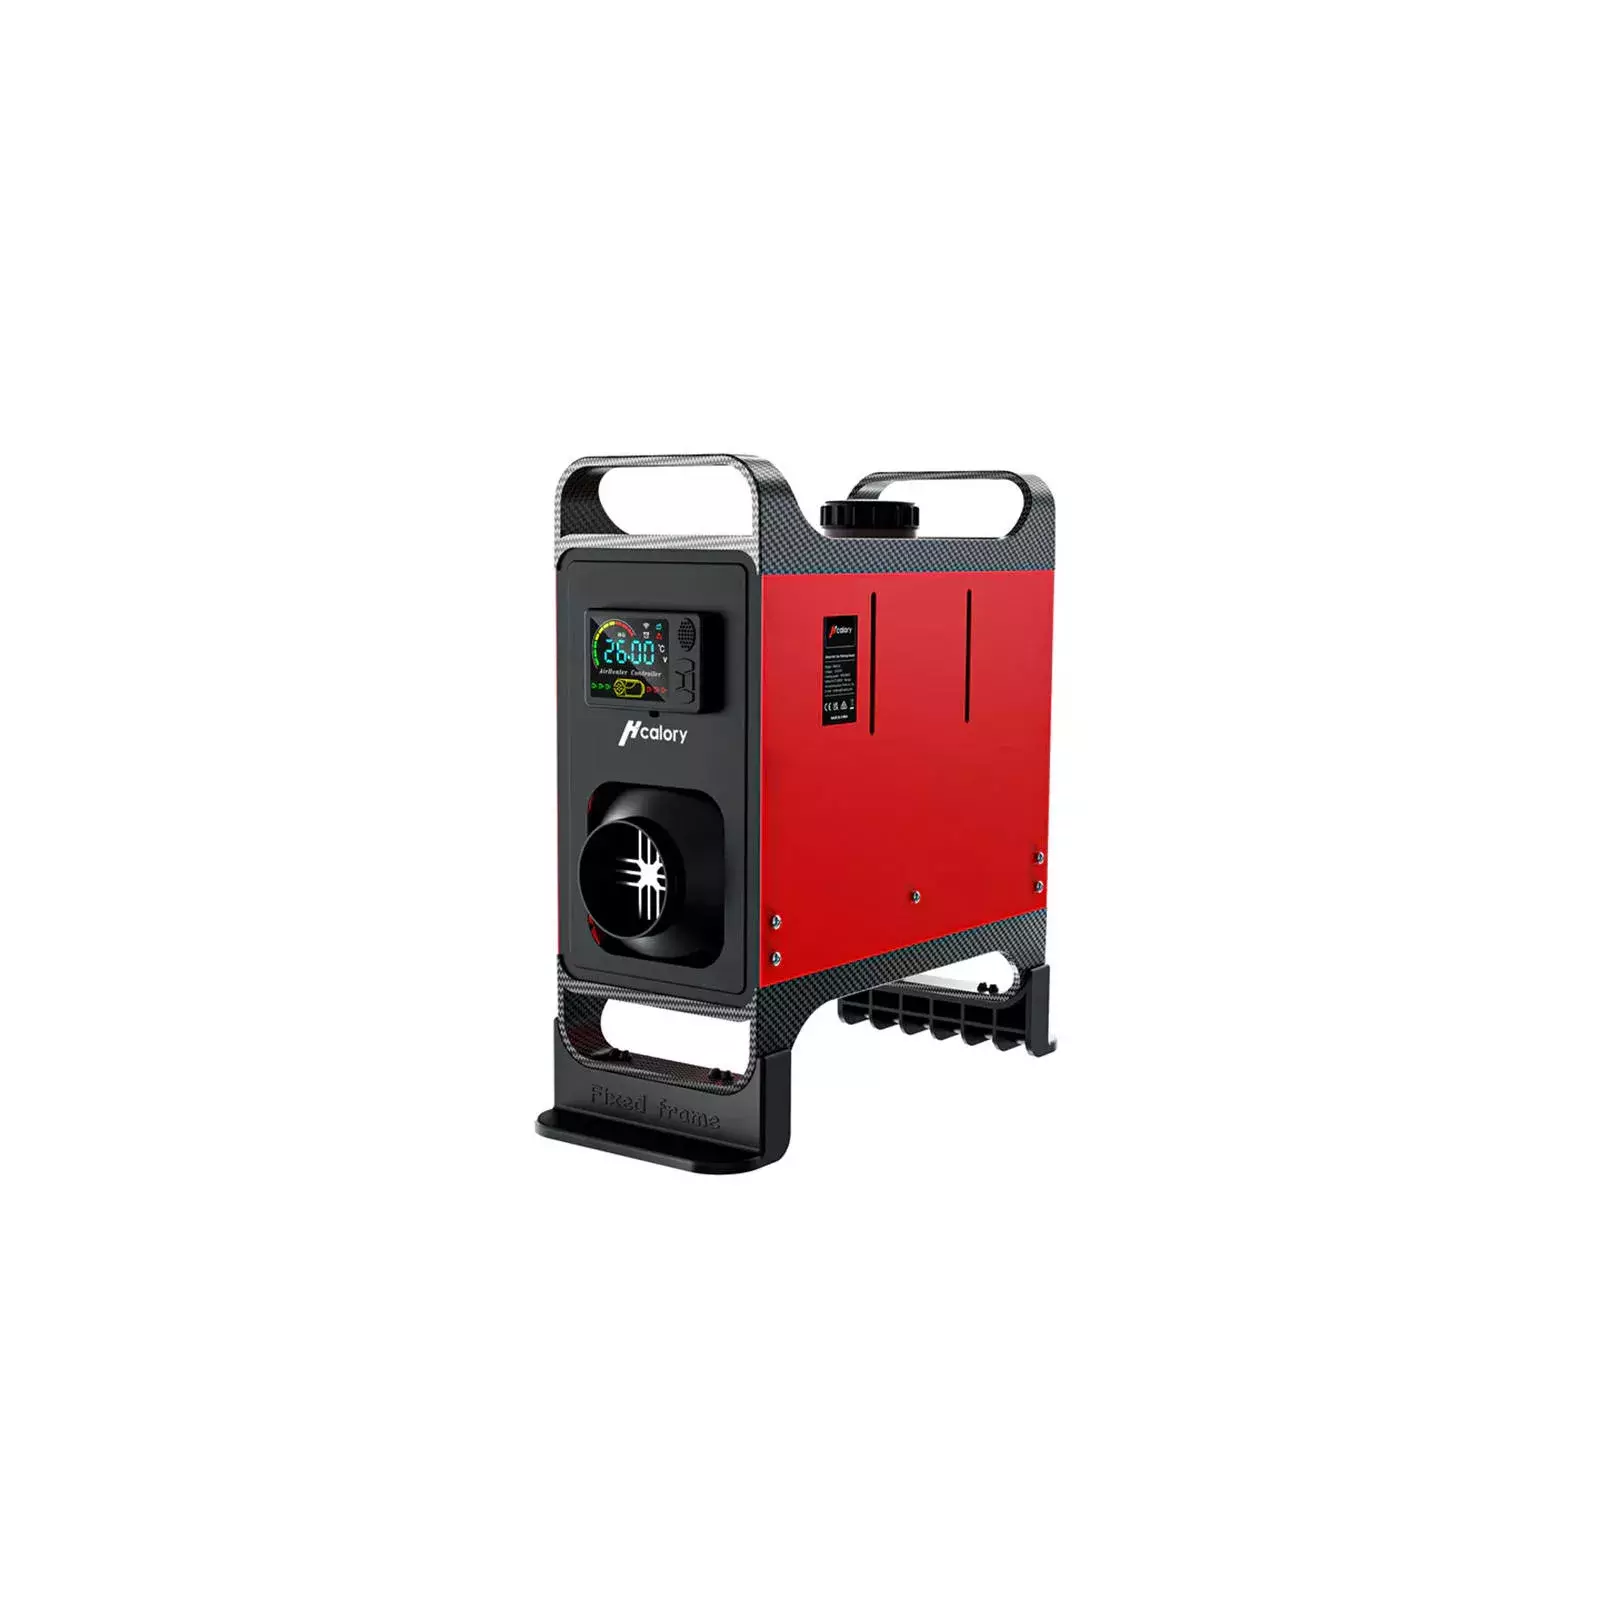 Parking heater / heater HCALORY HC-A02, 8 kW, Diesel (red) 